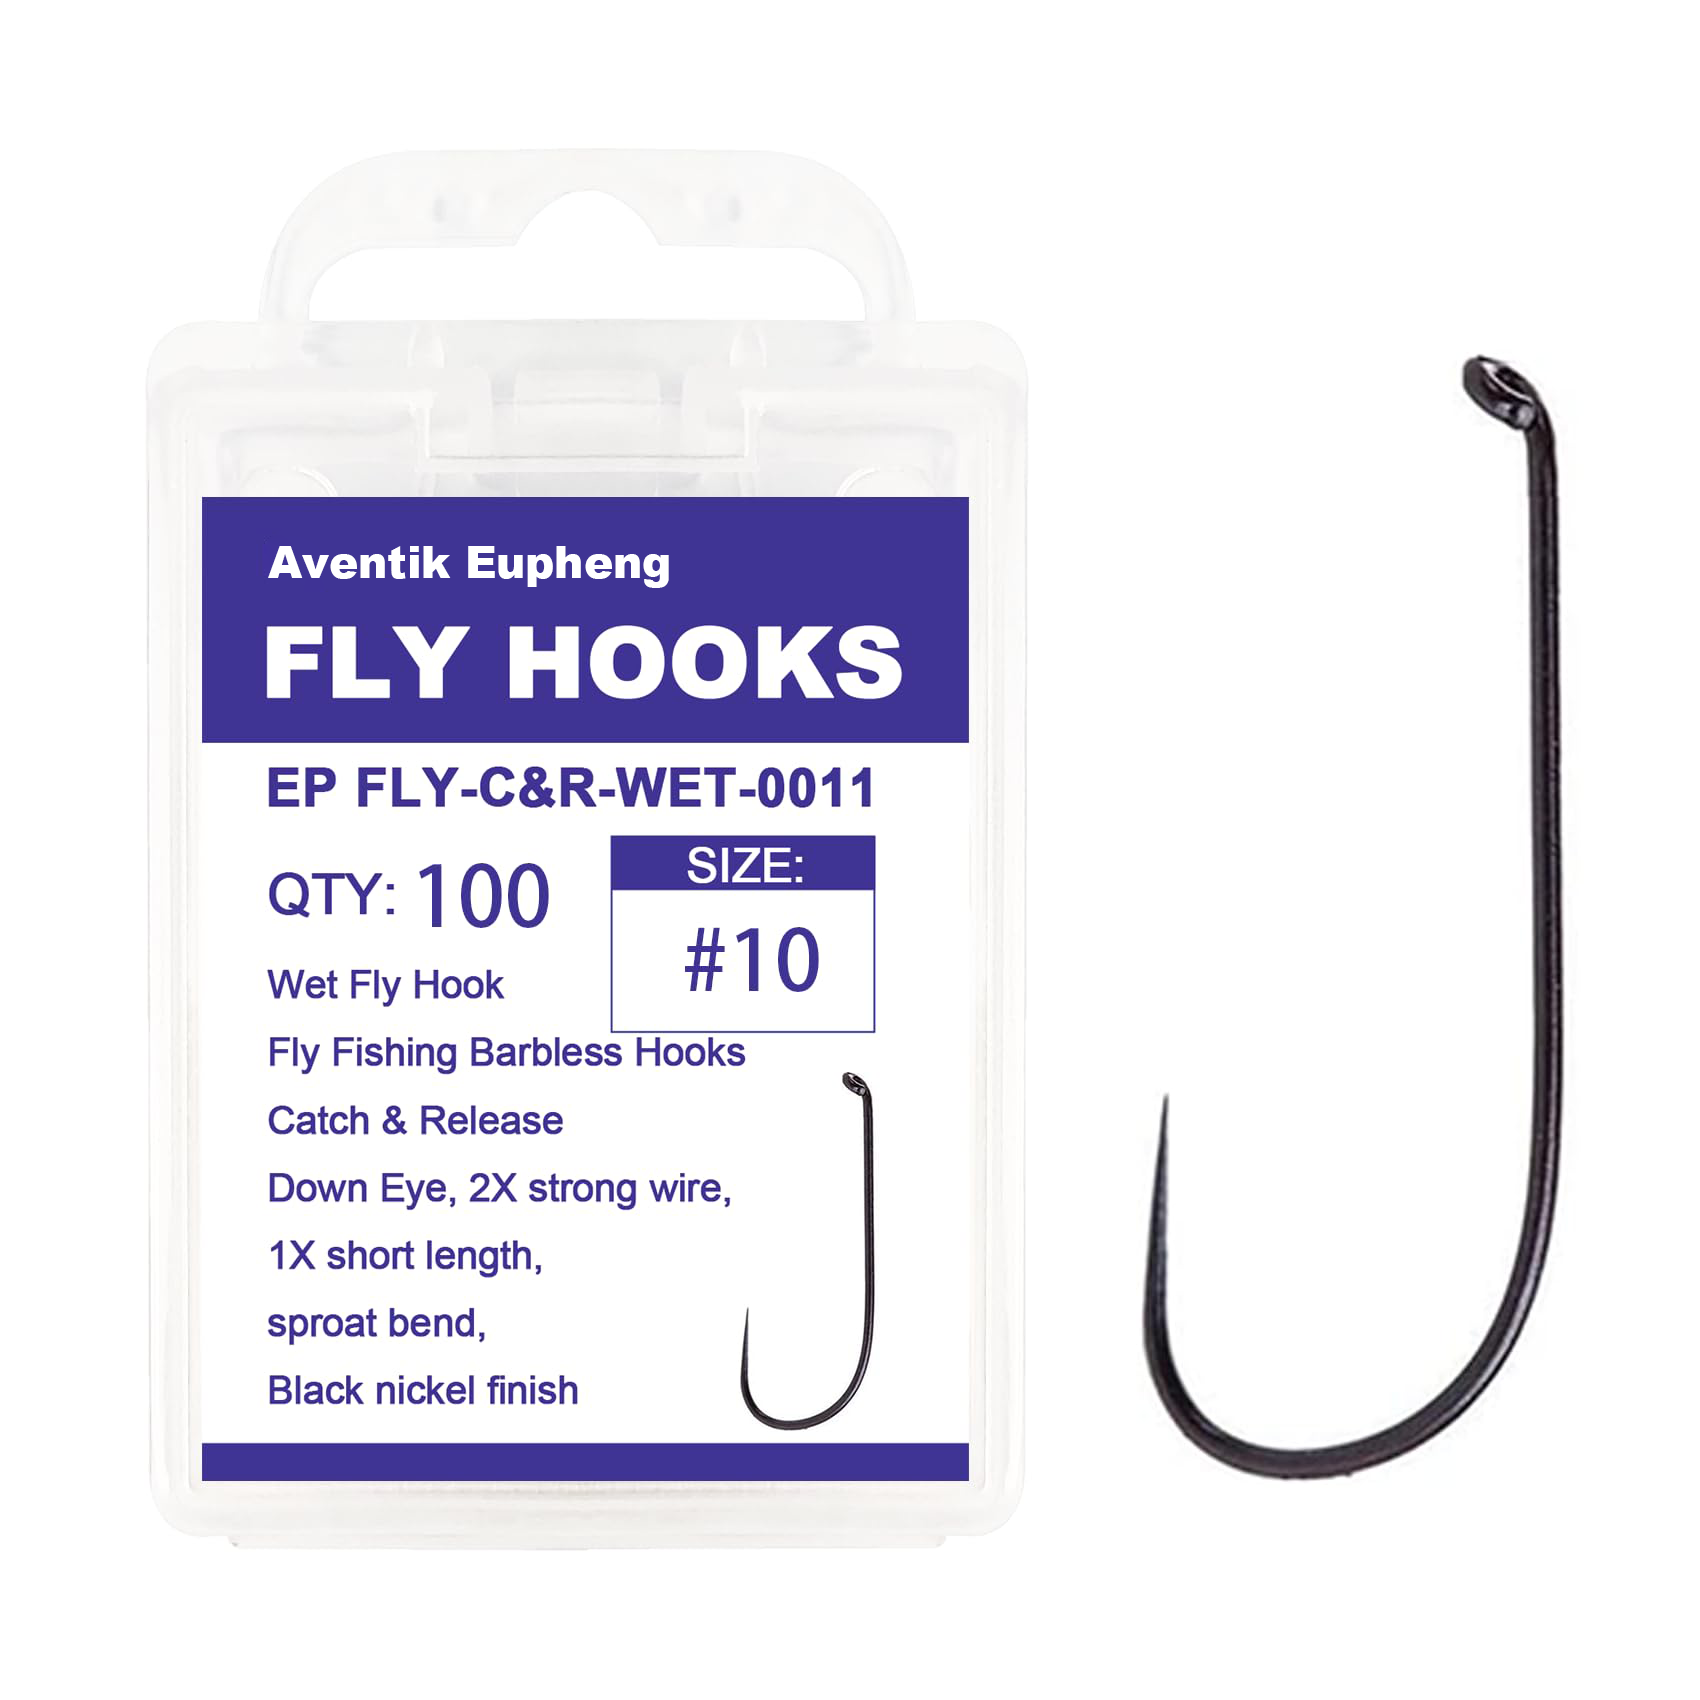 Grab Gape Black Nickel Barbless S16, Fly Tying Hooks